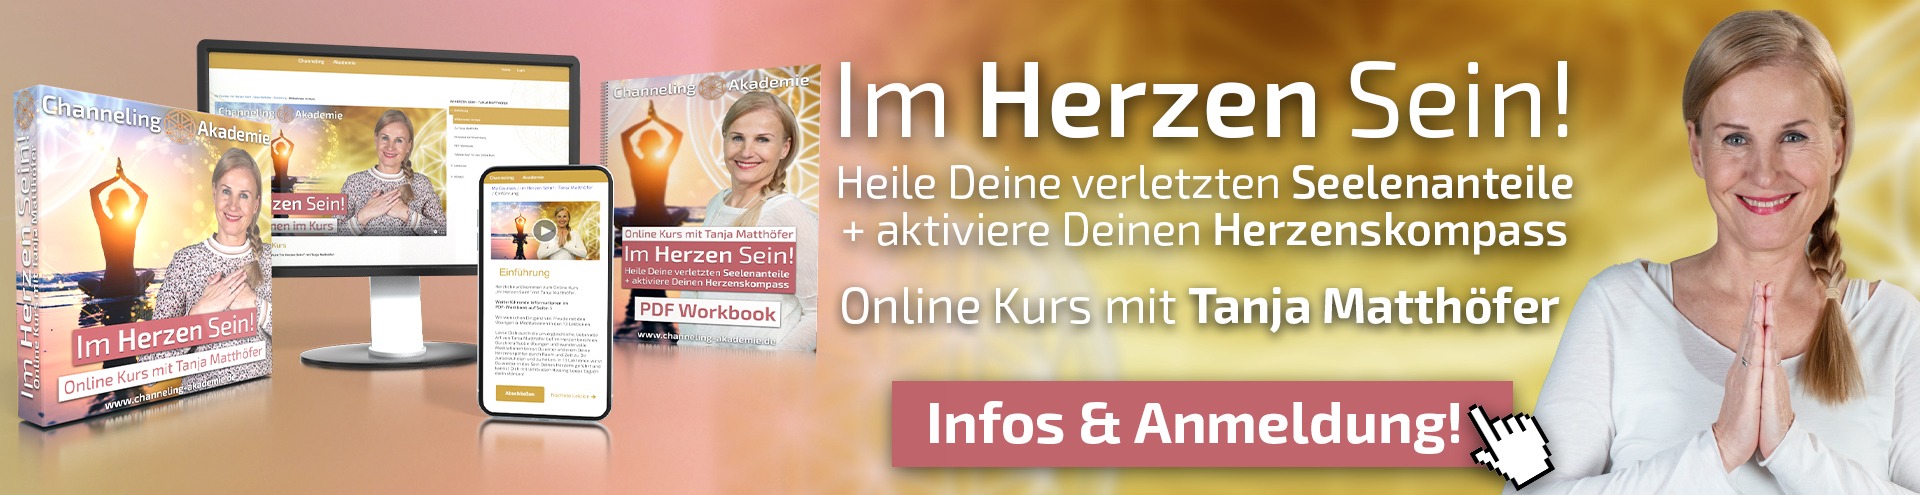 Tanja Matthöfer Im Herzen Sein Online Kurs Werbebanner